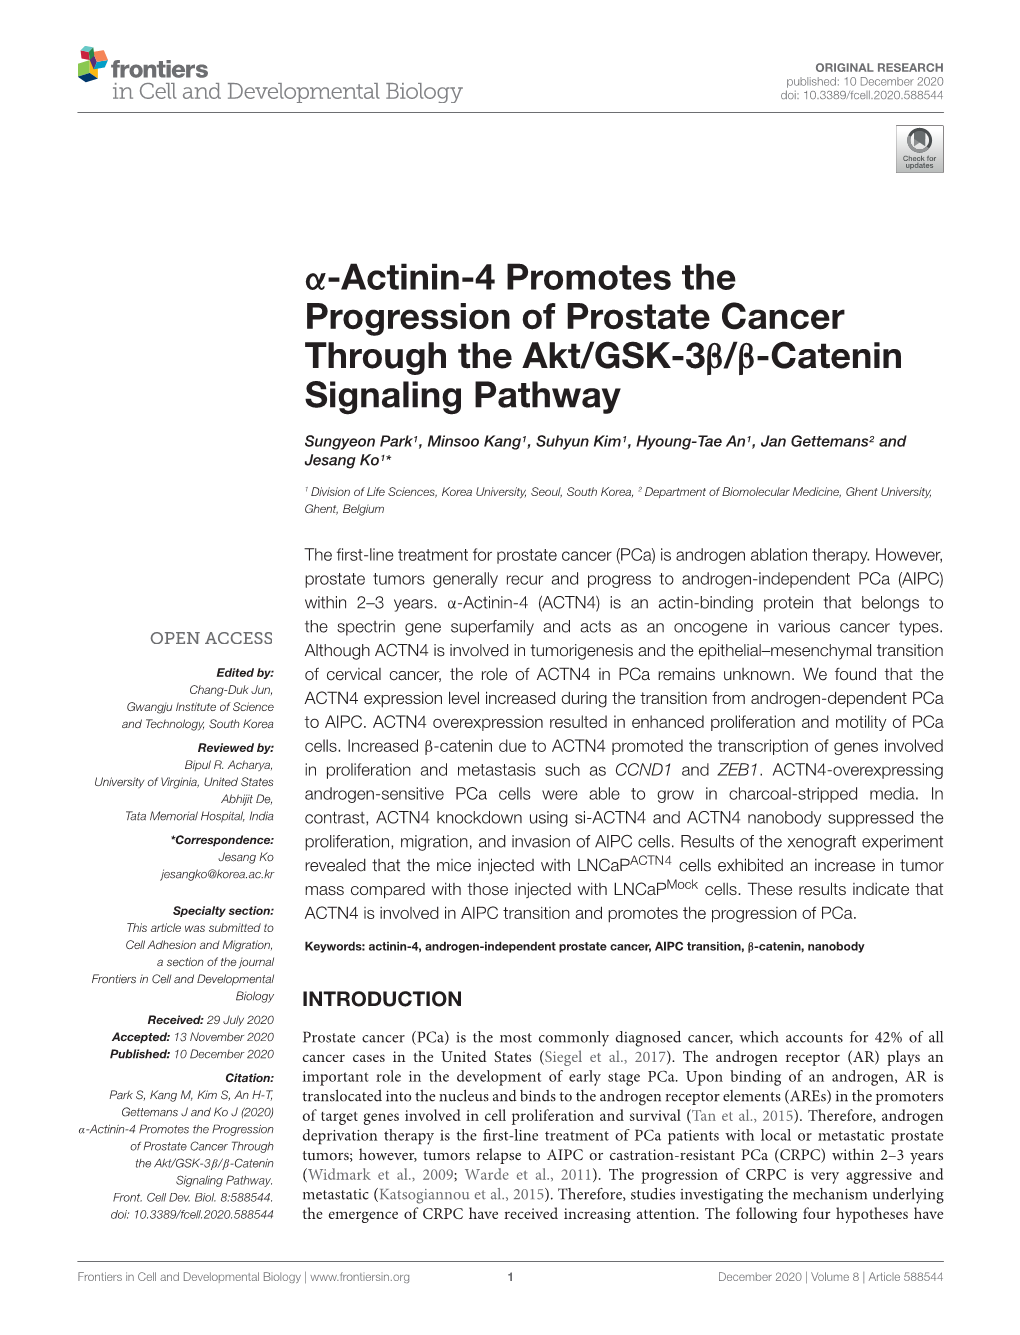 Α-Actinin-4 Promotes the Progression of Prostate Cancer Through the Akt/GSK-3Β/Β-Catenin Signaling Pathway